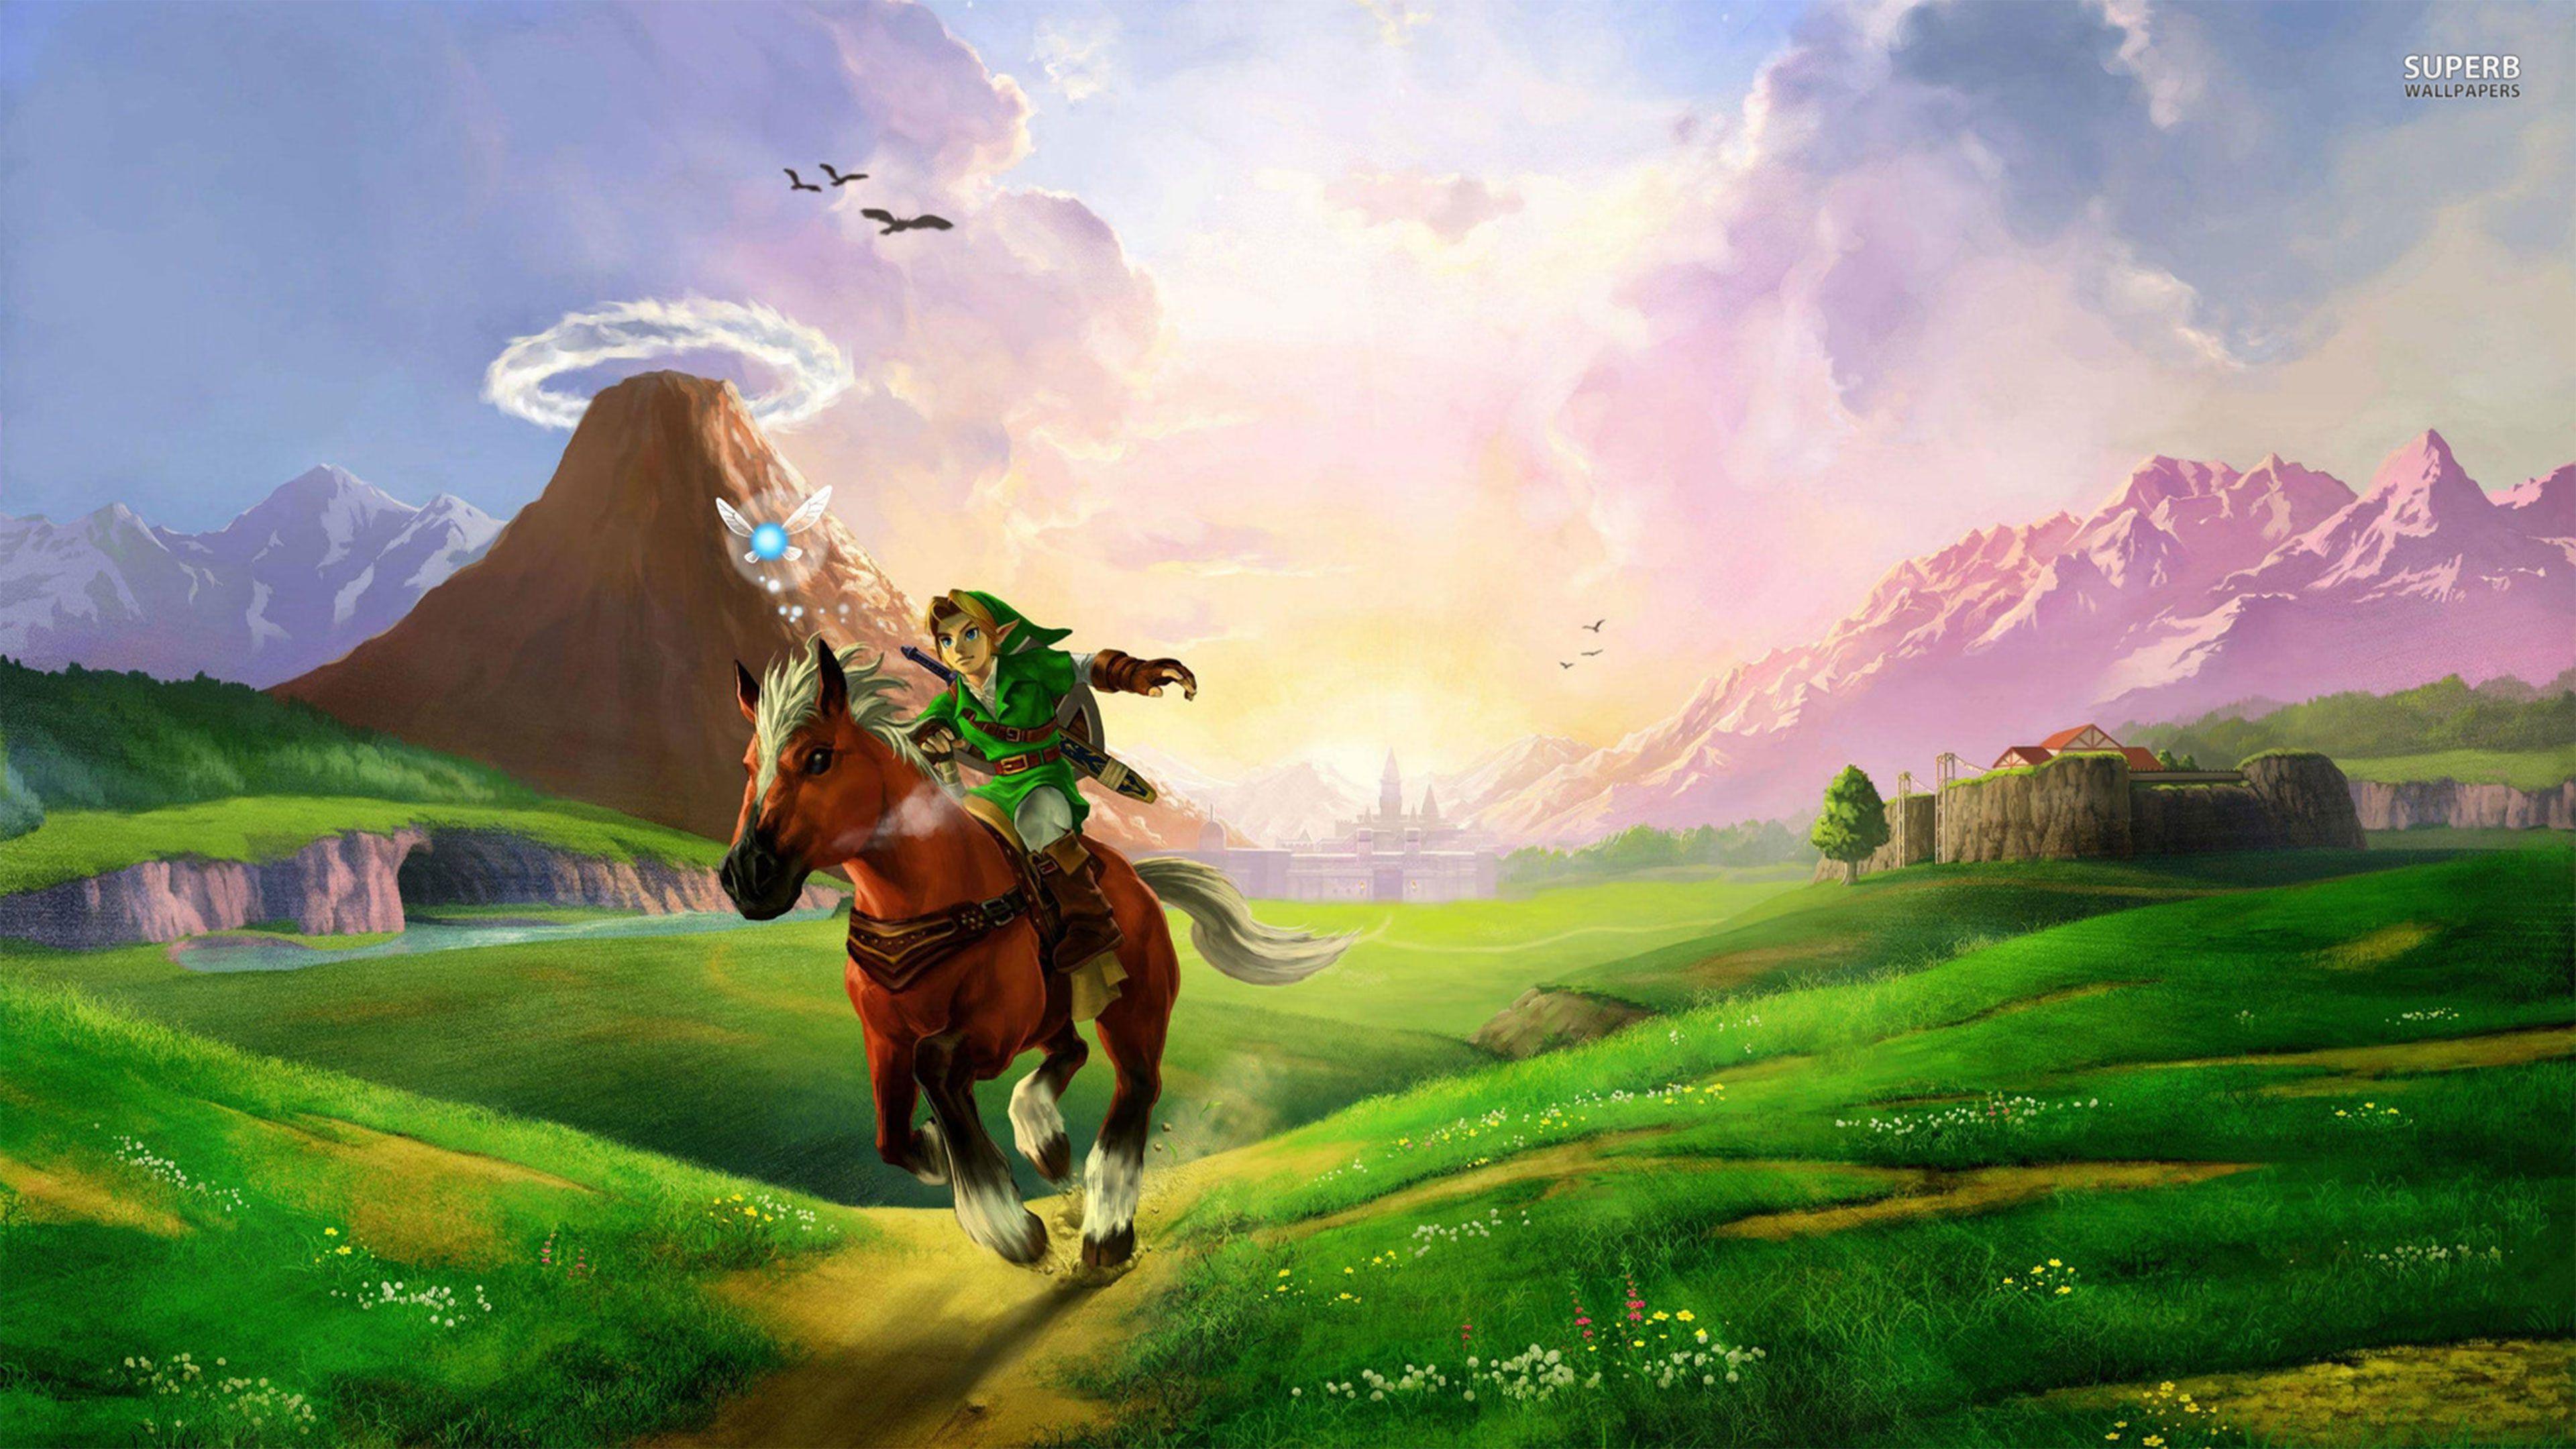 The Legend of Zelda Twilight Princess HD Wallpaper in Ultra HDK